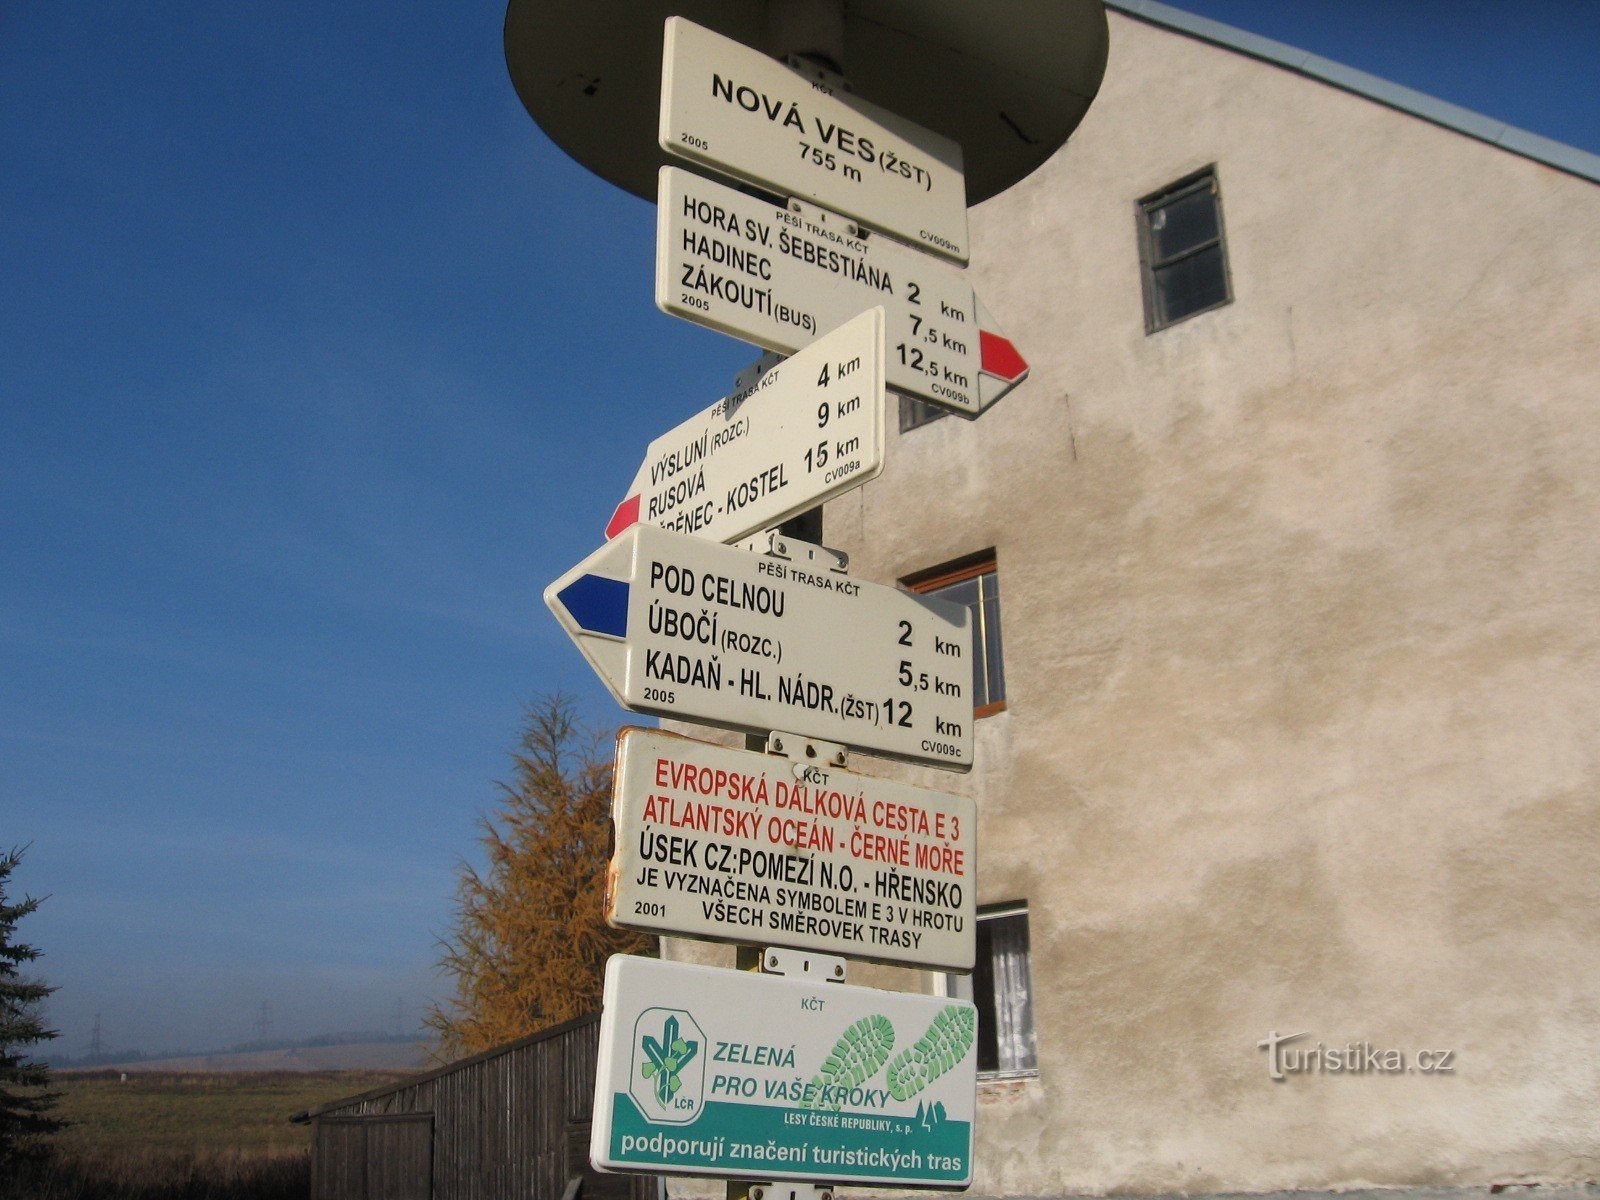 Signpost Nová Ves 755 m